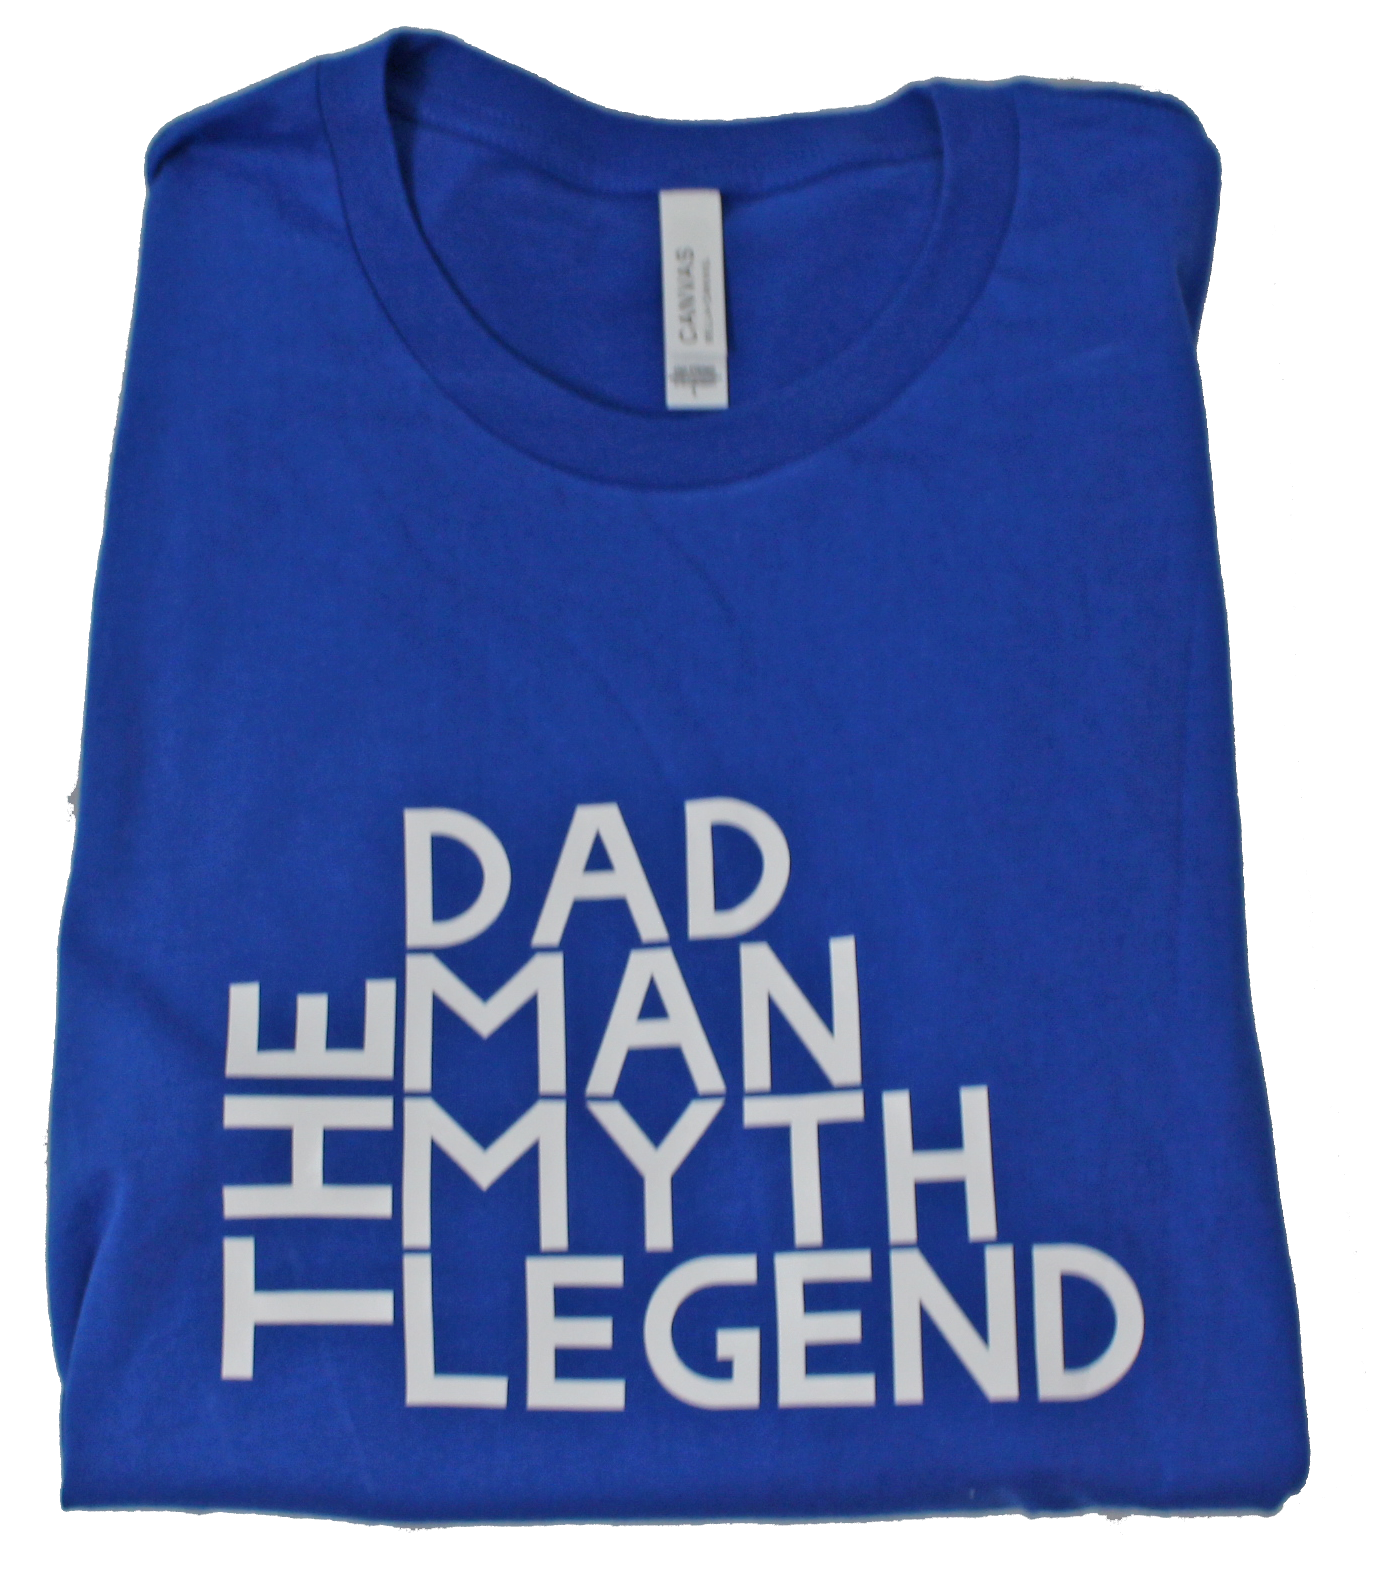 Dad, The Man, Myth, Legend